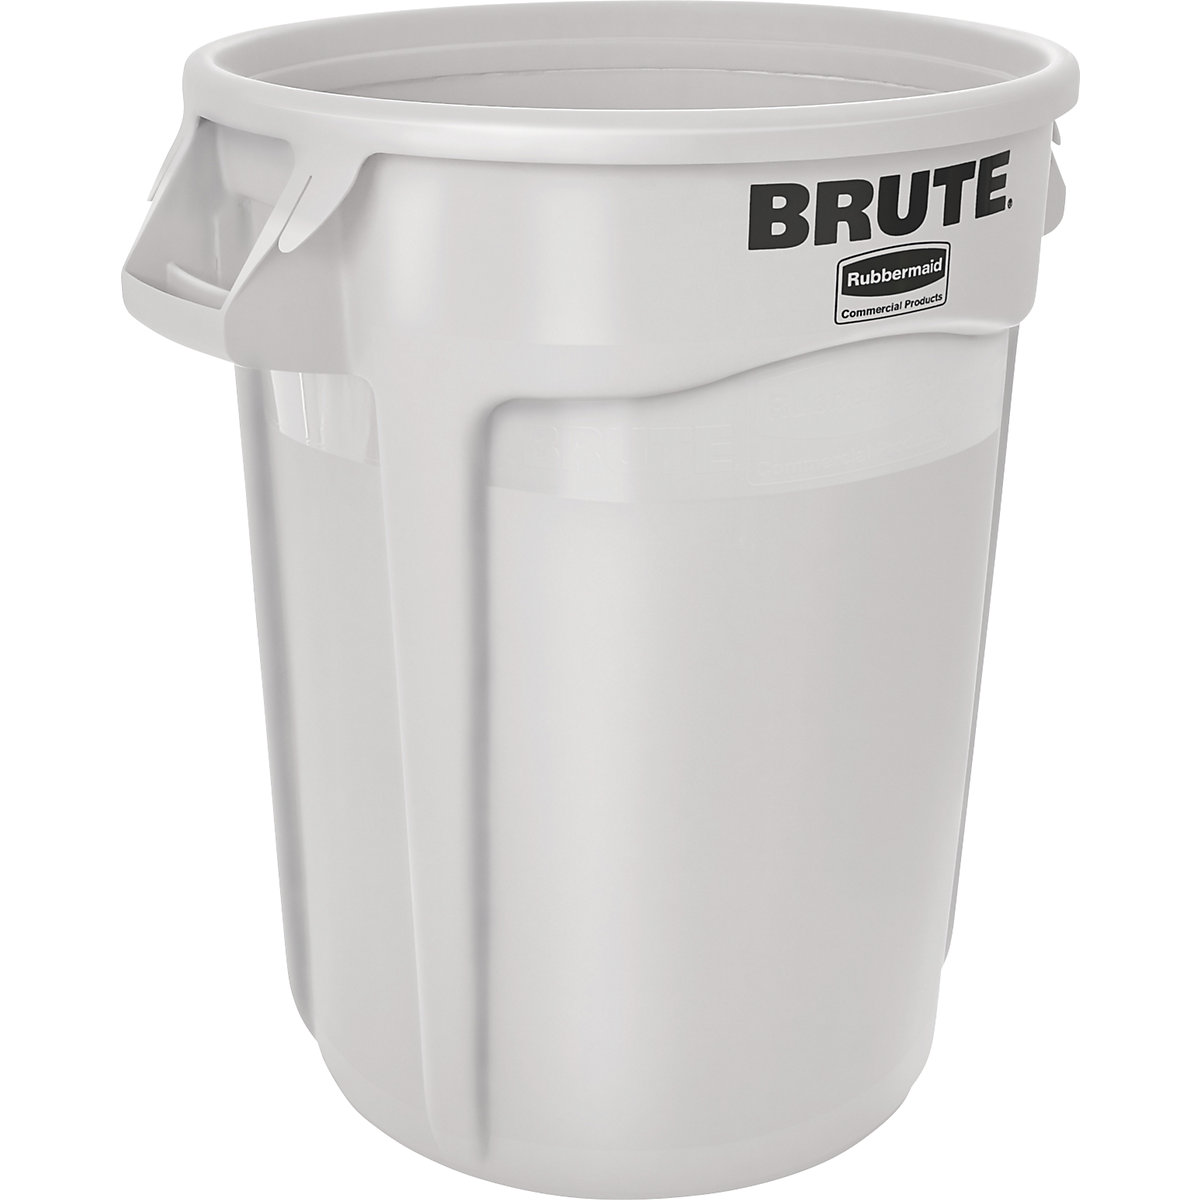 Univerzalni kontejner BRUTE®, okrugli – Rubbermaid, sadržaj 121 l, u bijeloj boji-10